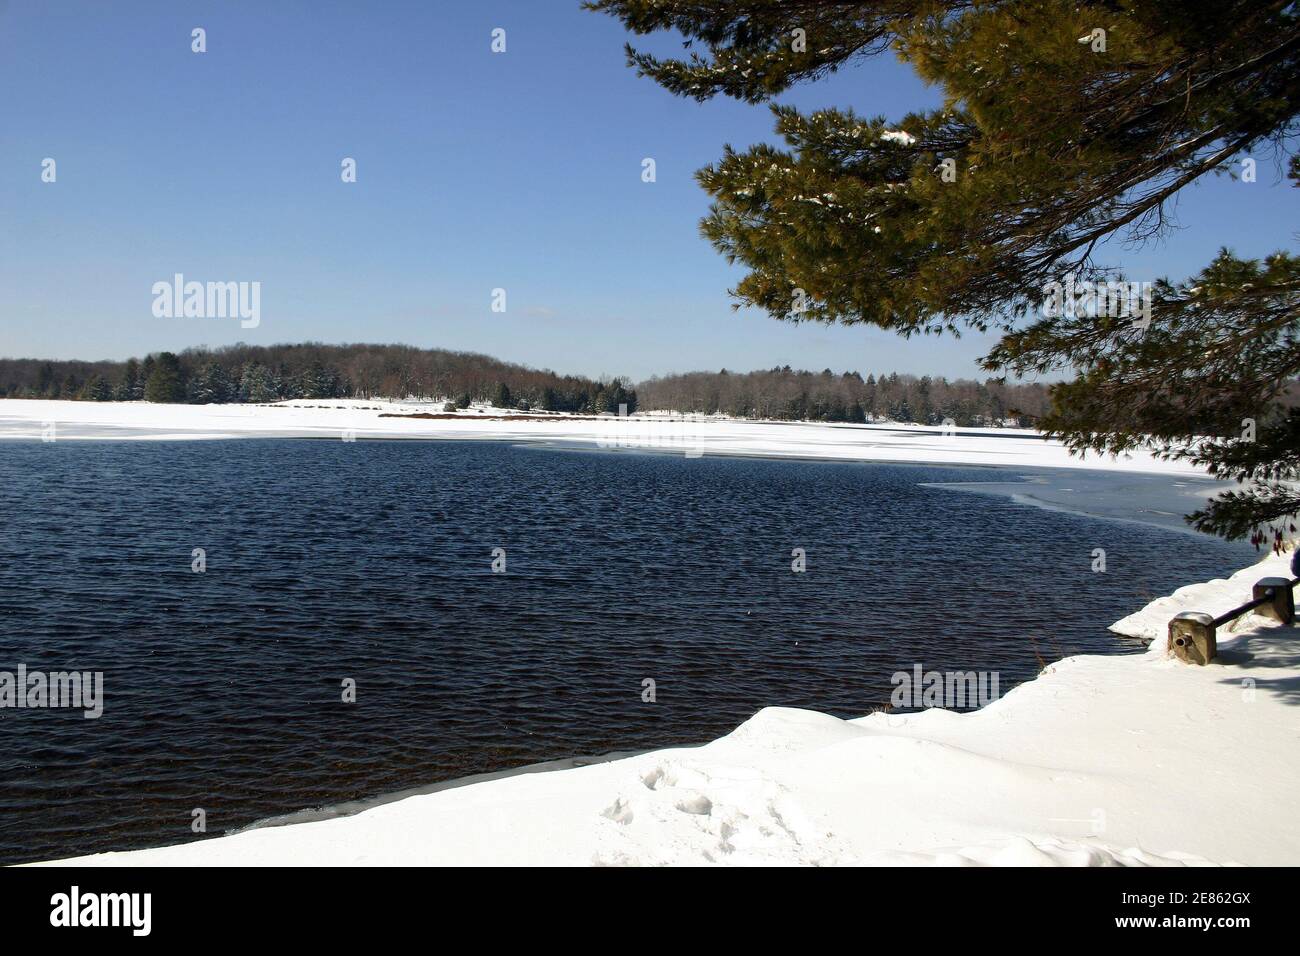 La nature hiverne dans les montagnes Pocono de Pennsylvanie, aux États-Unis. Parc national Promise Land. Banque D'Images